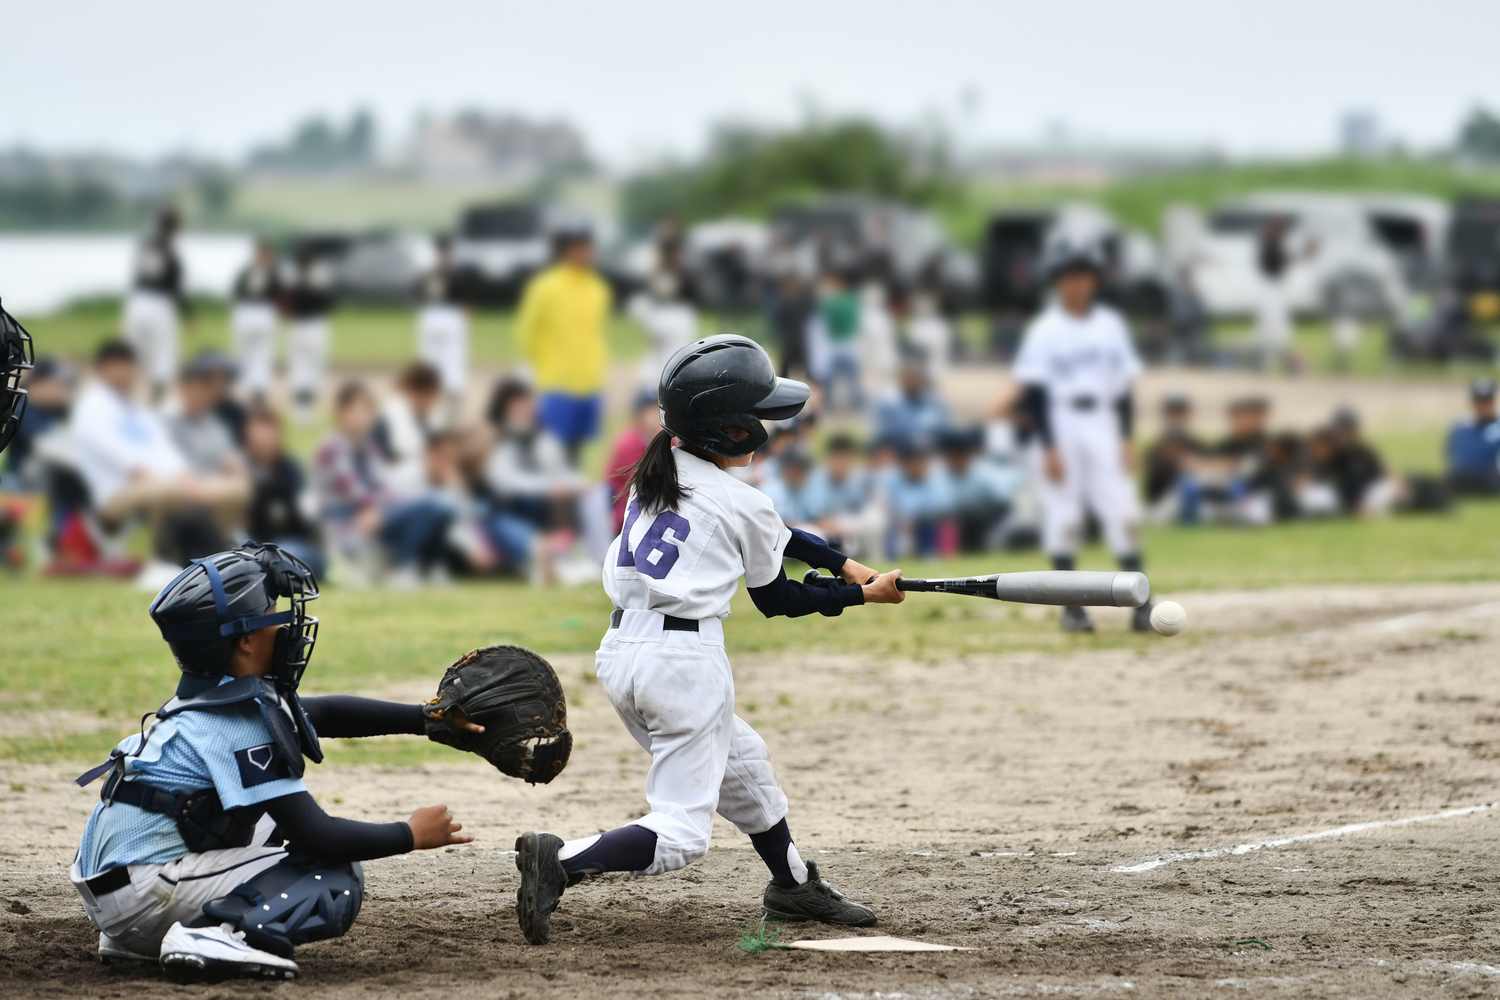 女子が少年野球をやるために必要なものとは 少年野球の全て